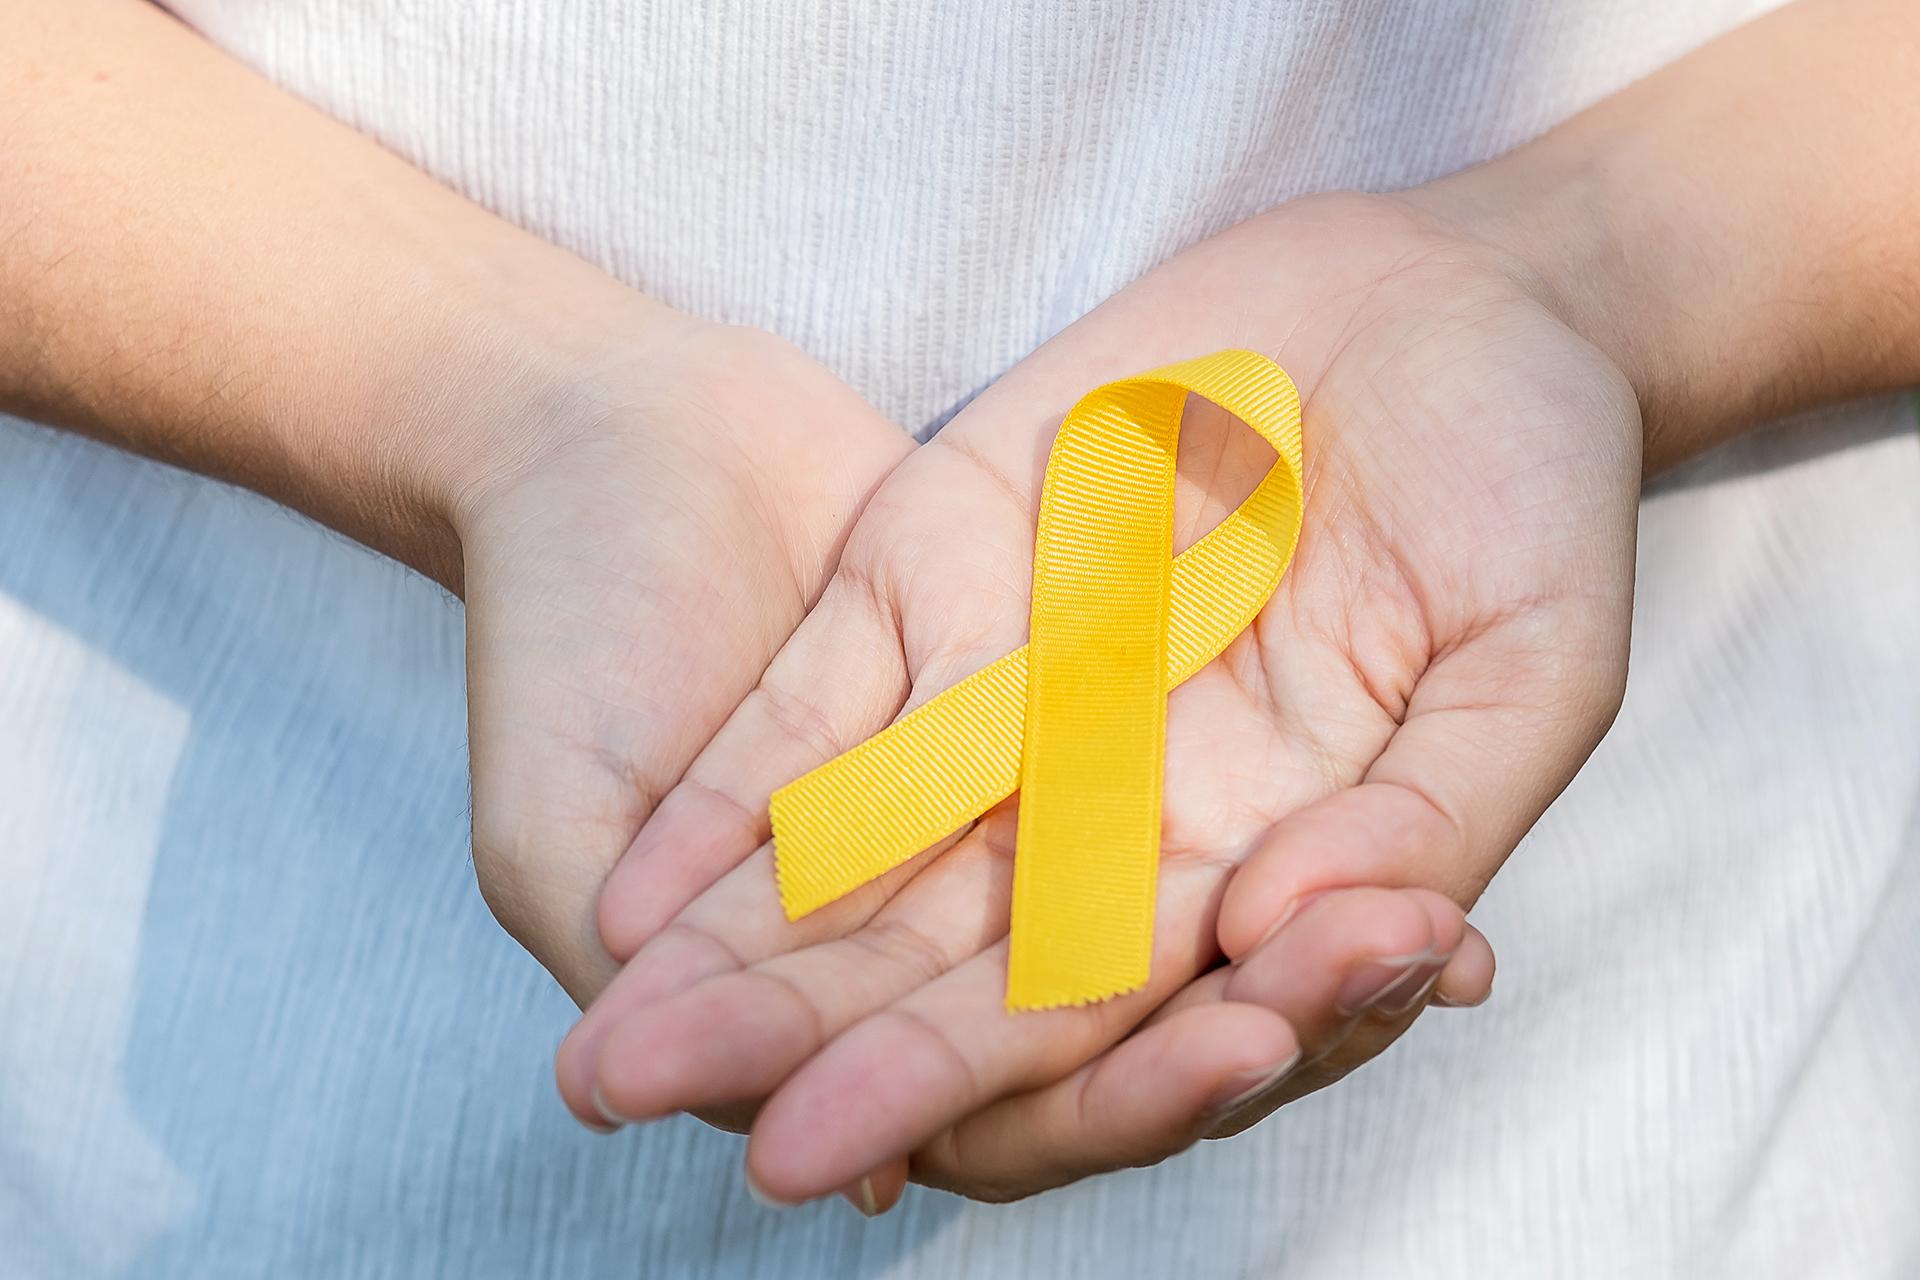 बचपन के कैंसर के 8 प्रमुख सामान्य प्रकार जिनके बारे में आपको जानना आवश्यक है